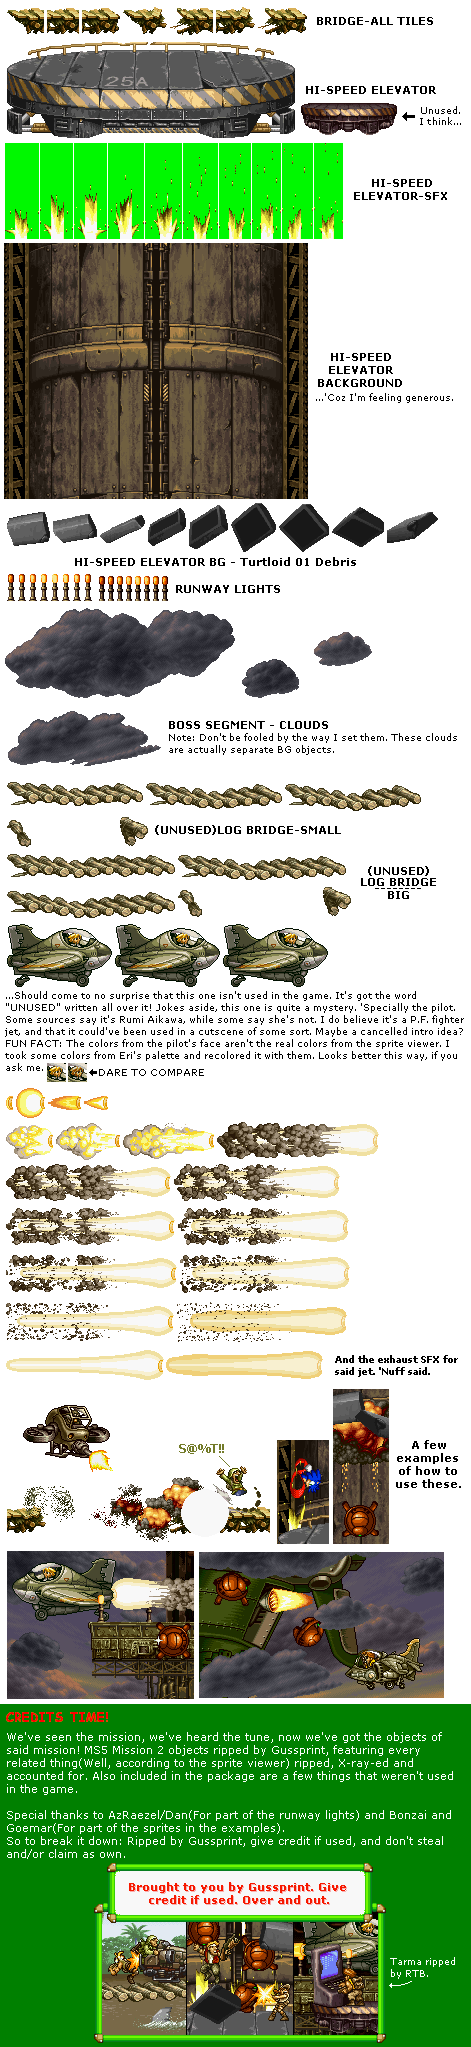 Metal Slug 5 - Mission 2 Environmental Objects